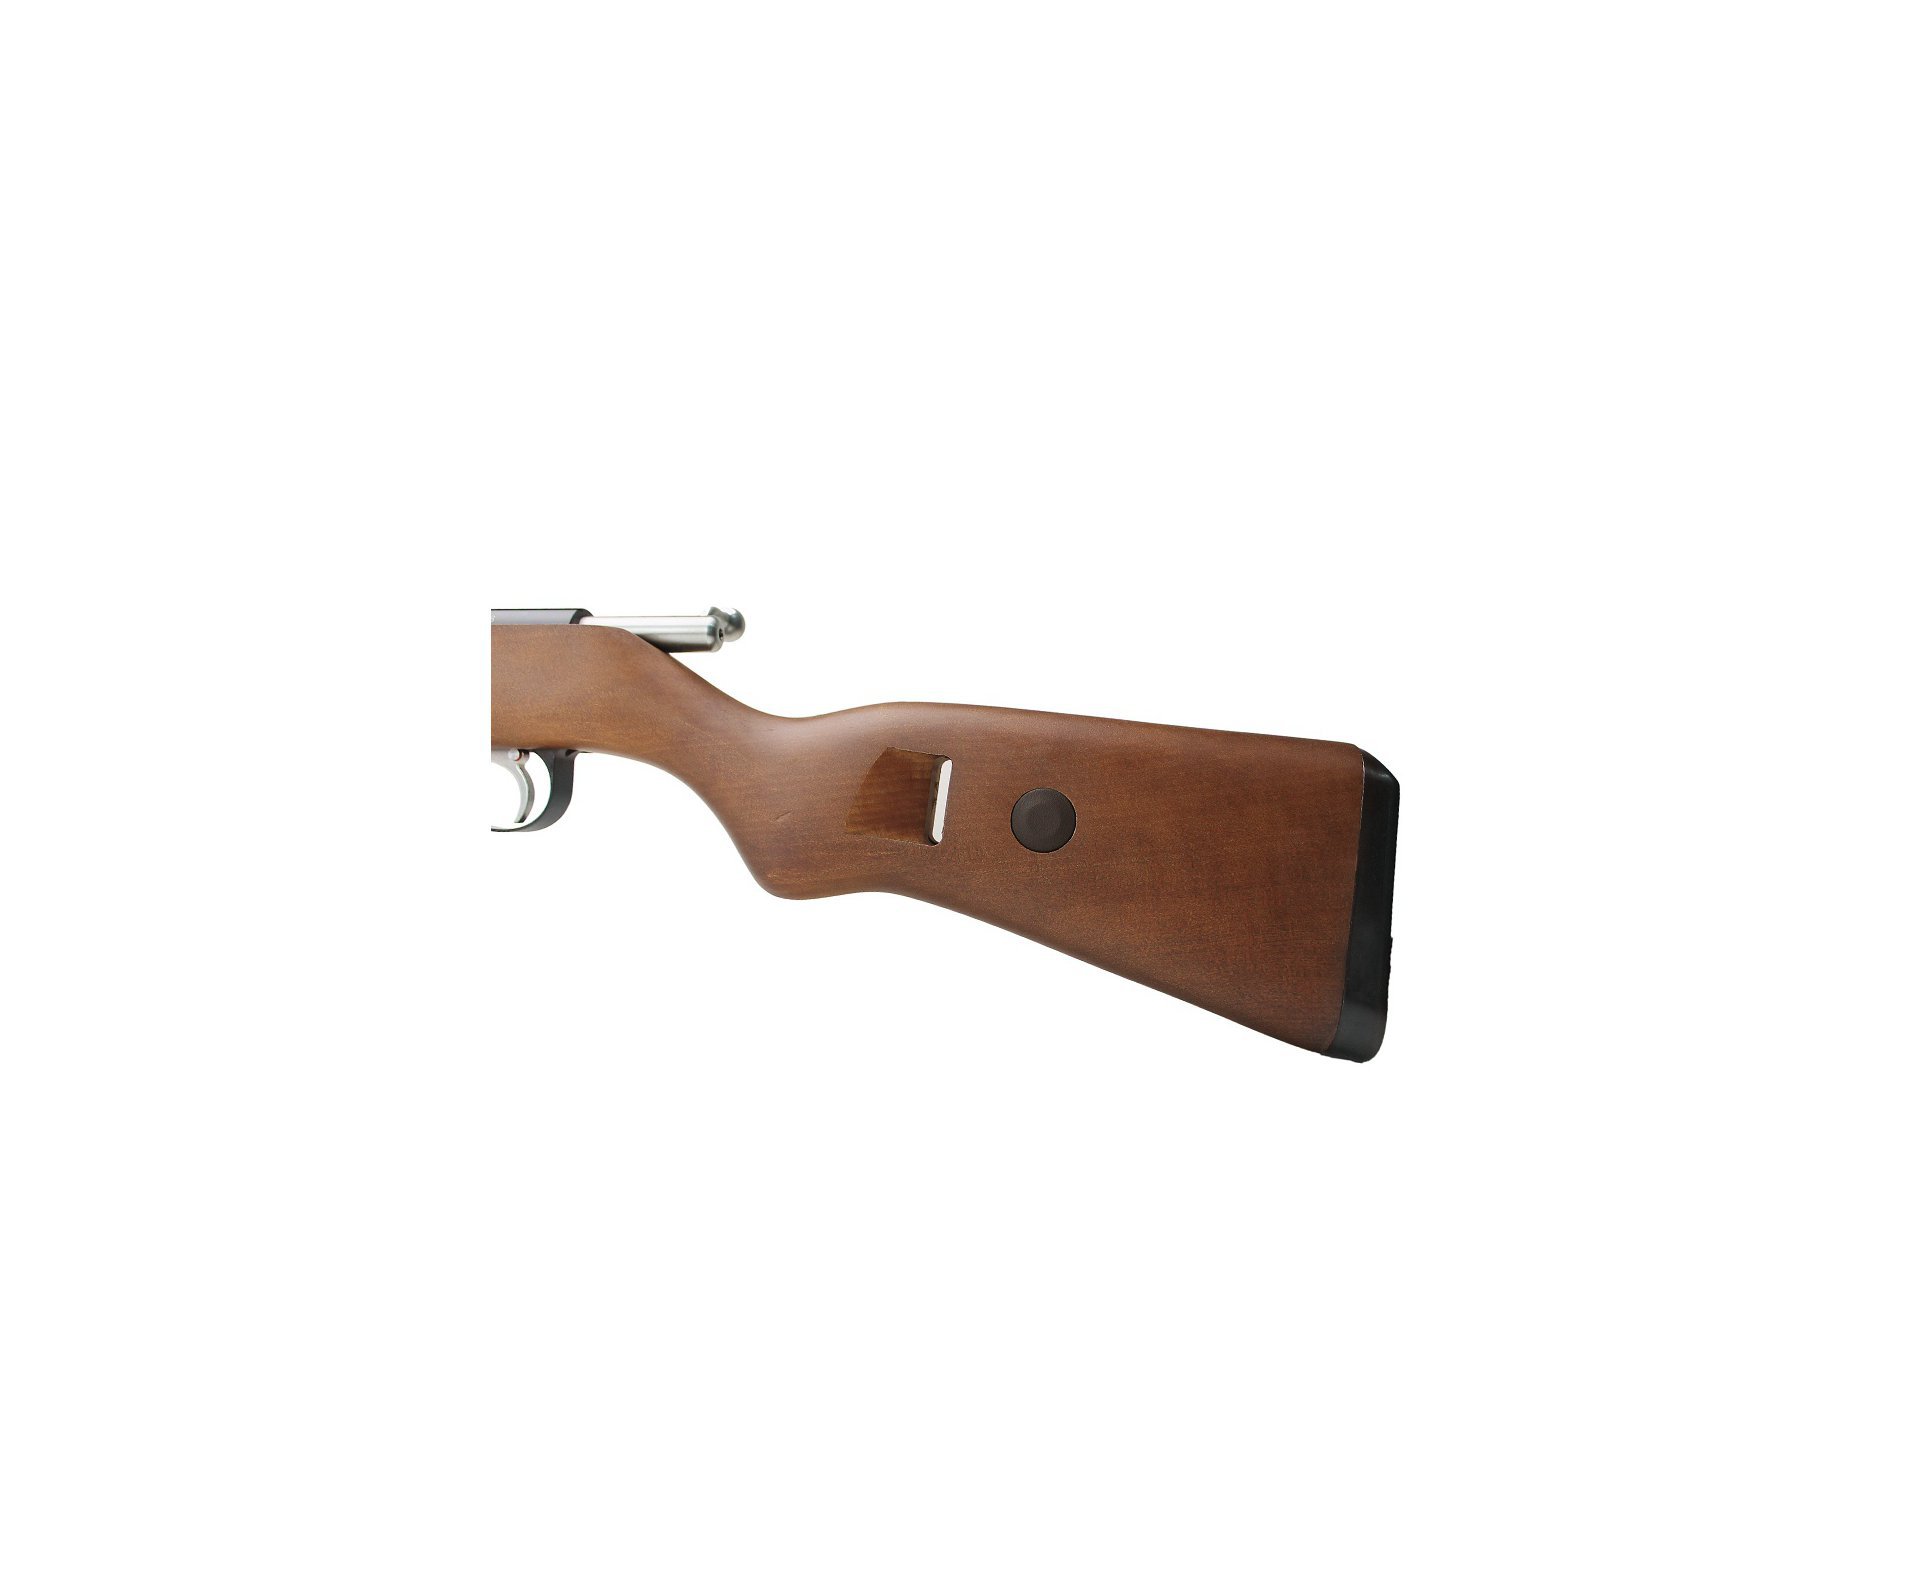 Carabina de Pressão PCP Mauser K98 5.5mm - Diana